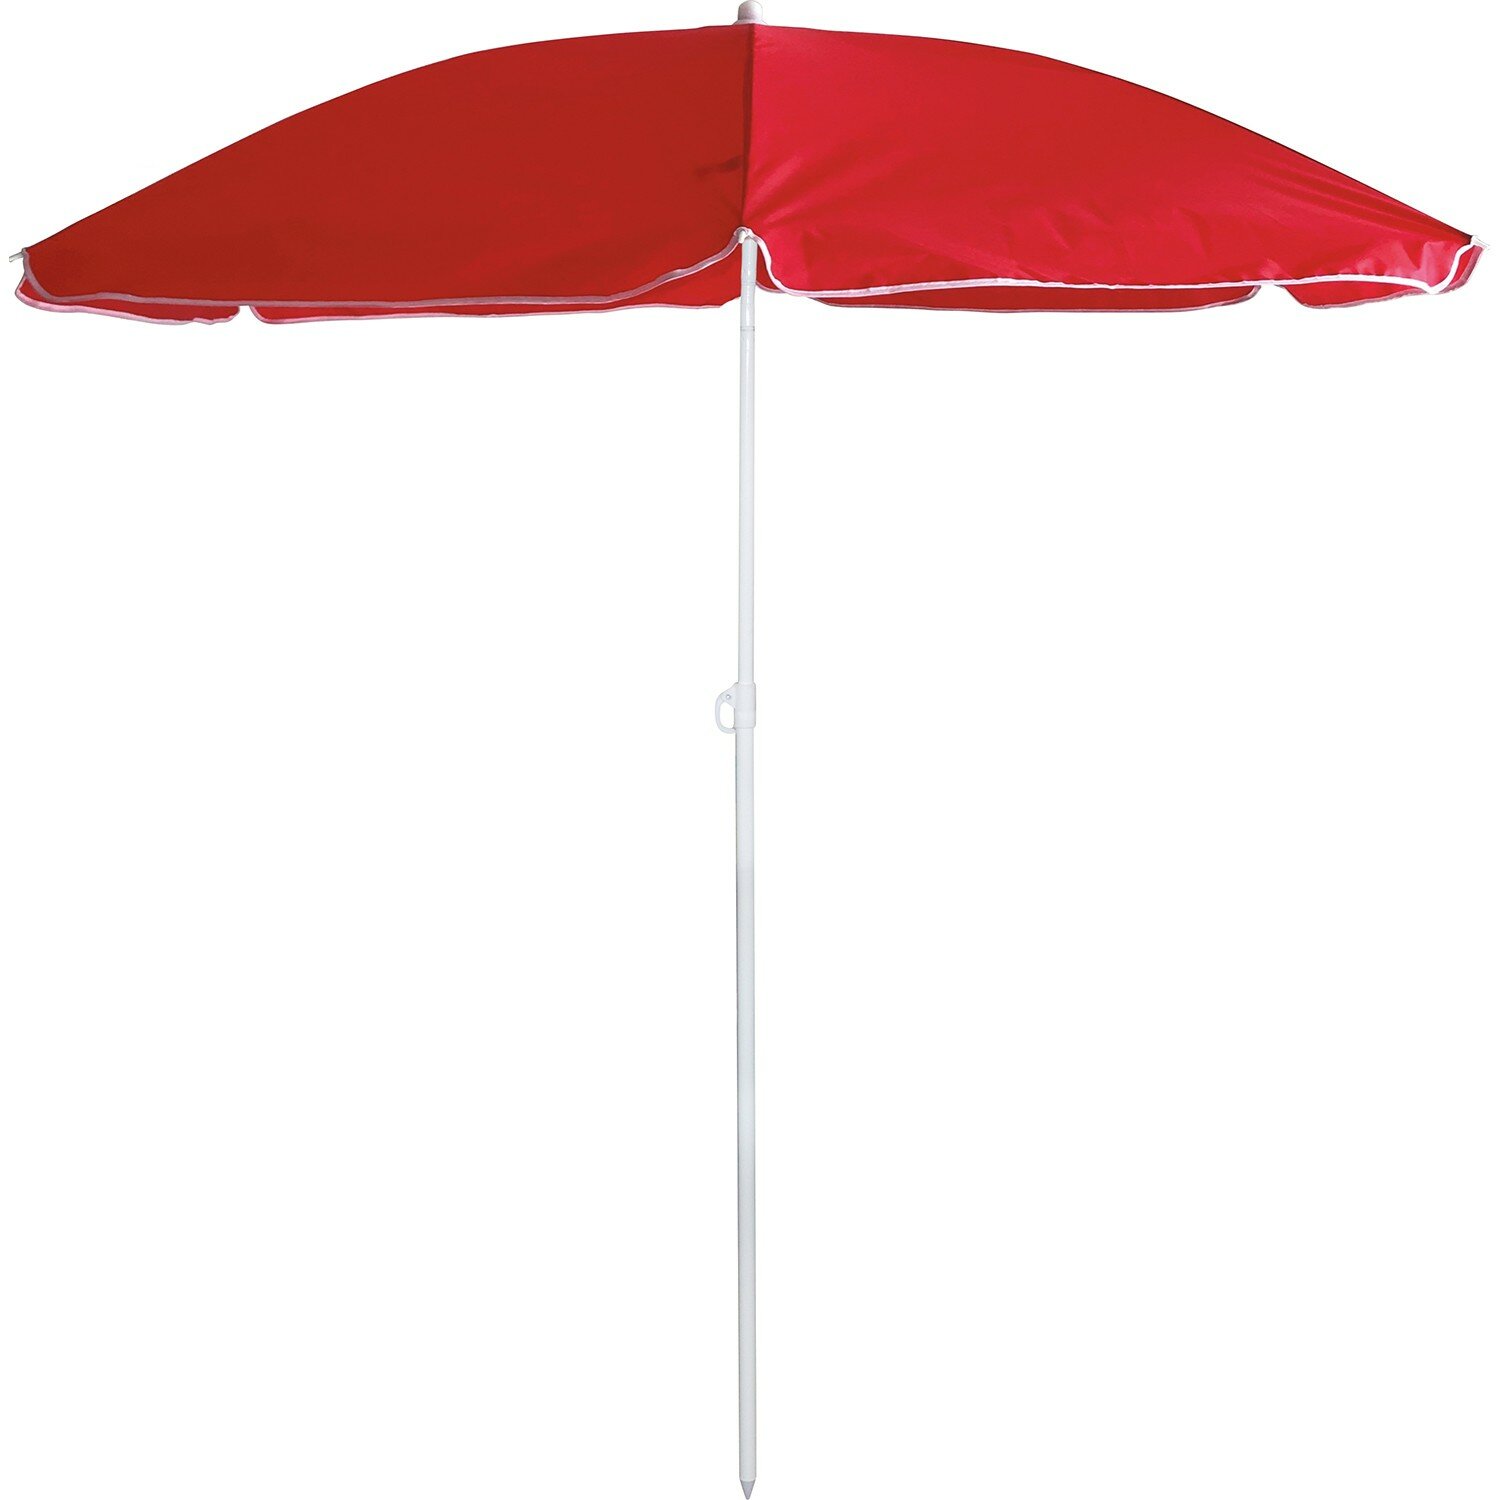 Зонт пляжный BU-69, 165 см, складная штанга 190 см, с наклоном